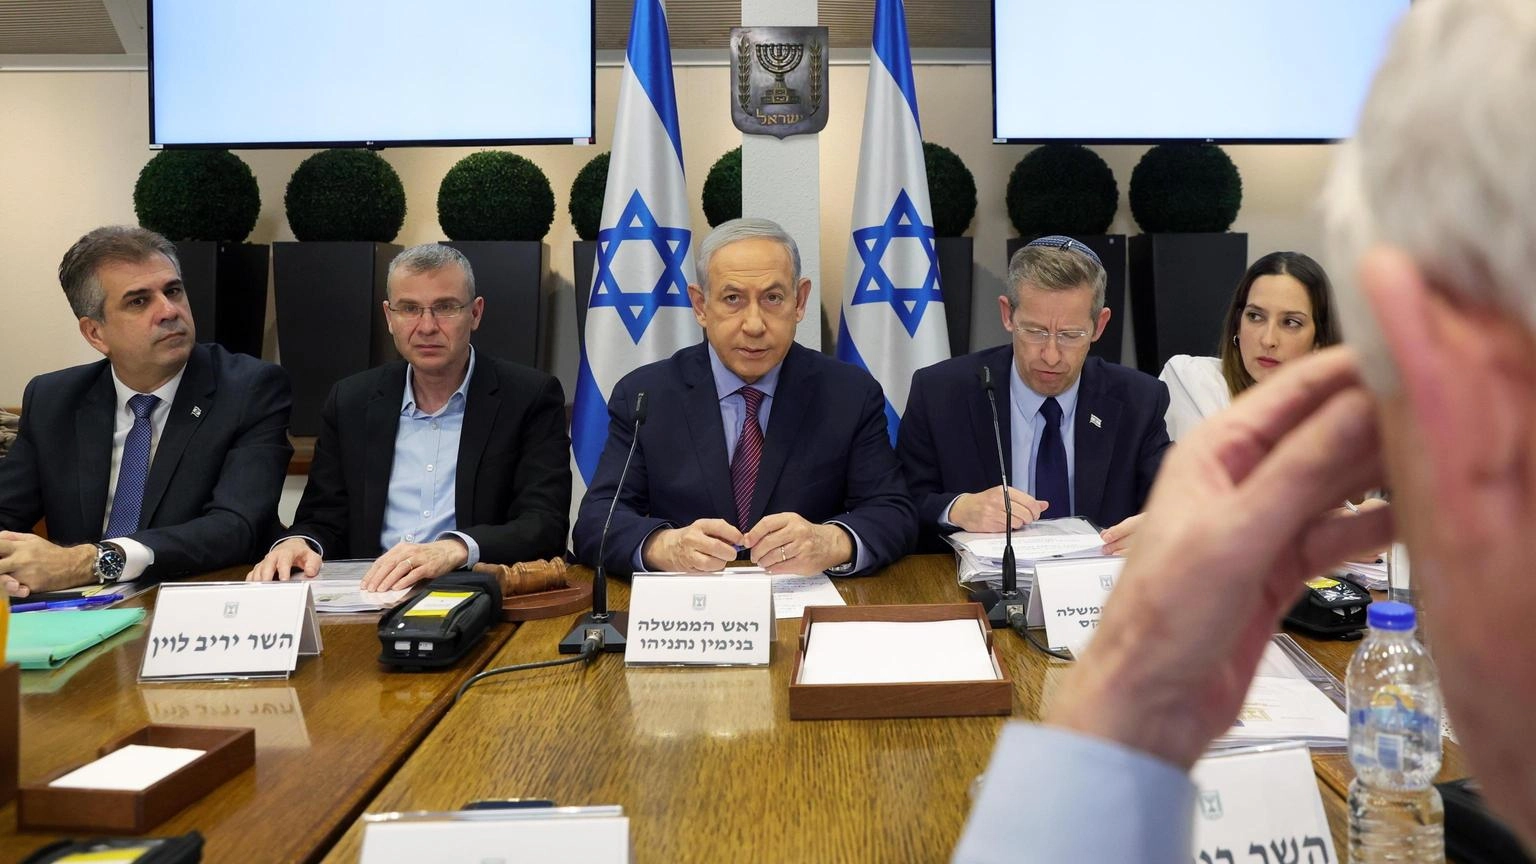 Corte Suprema annulla elemento chiave riforma Netanyahu